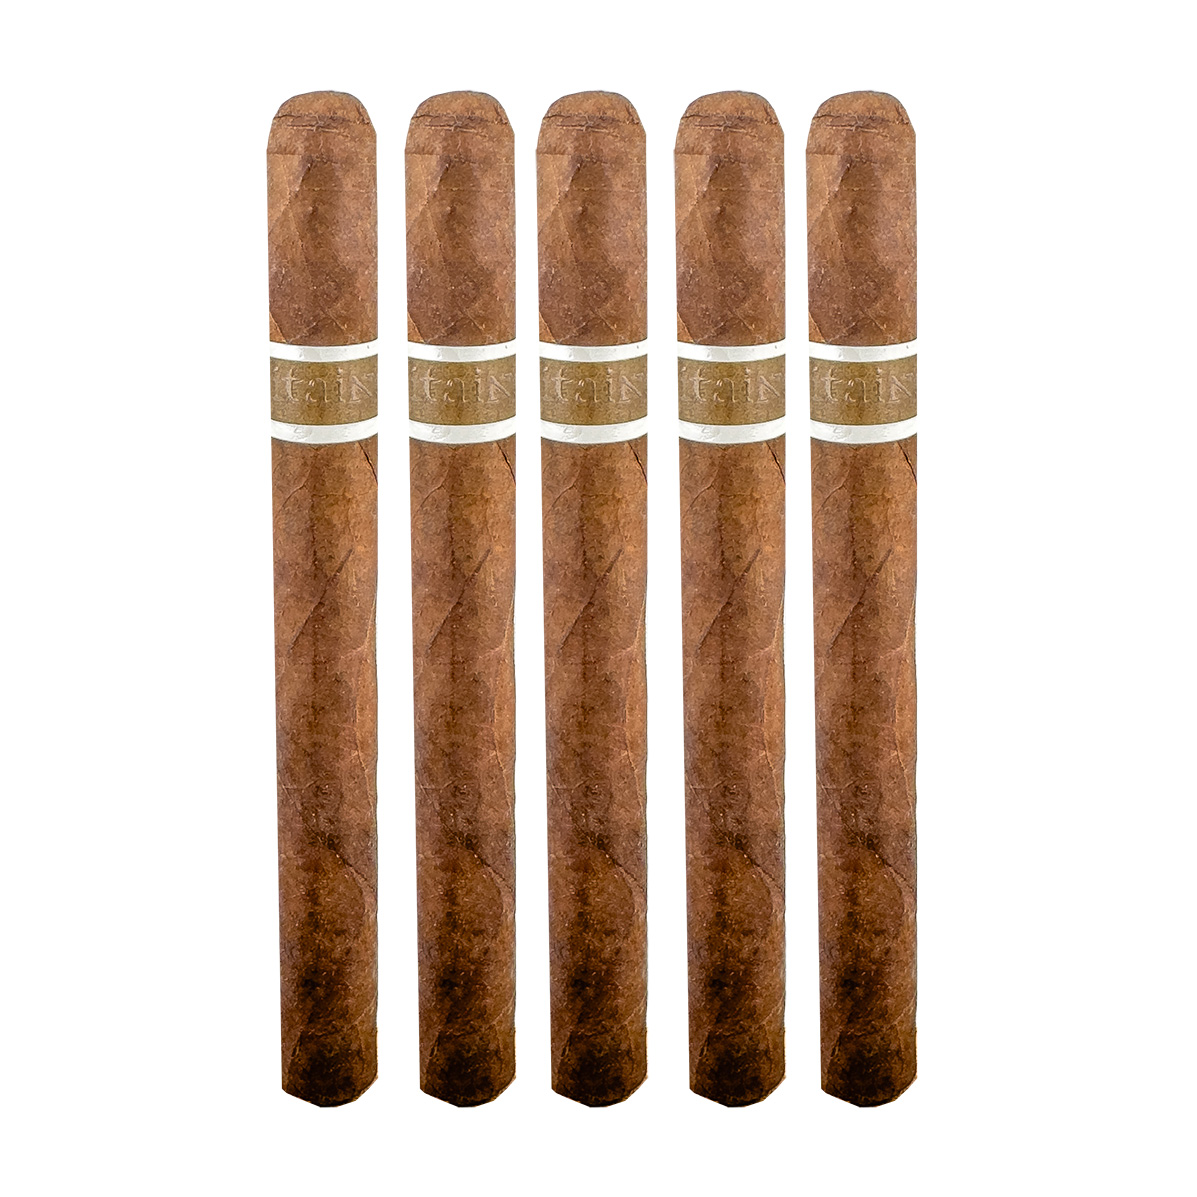 Aquitaine Breuil Panatela Cigar - 5 Pack